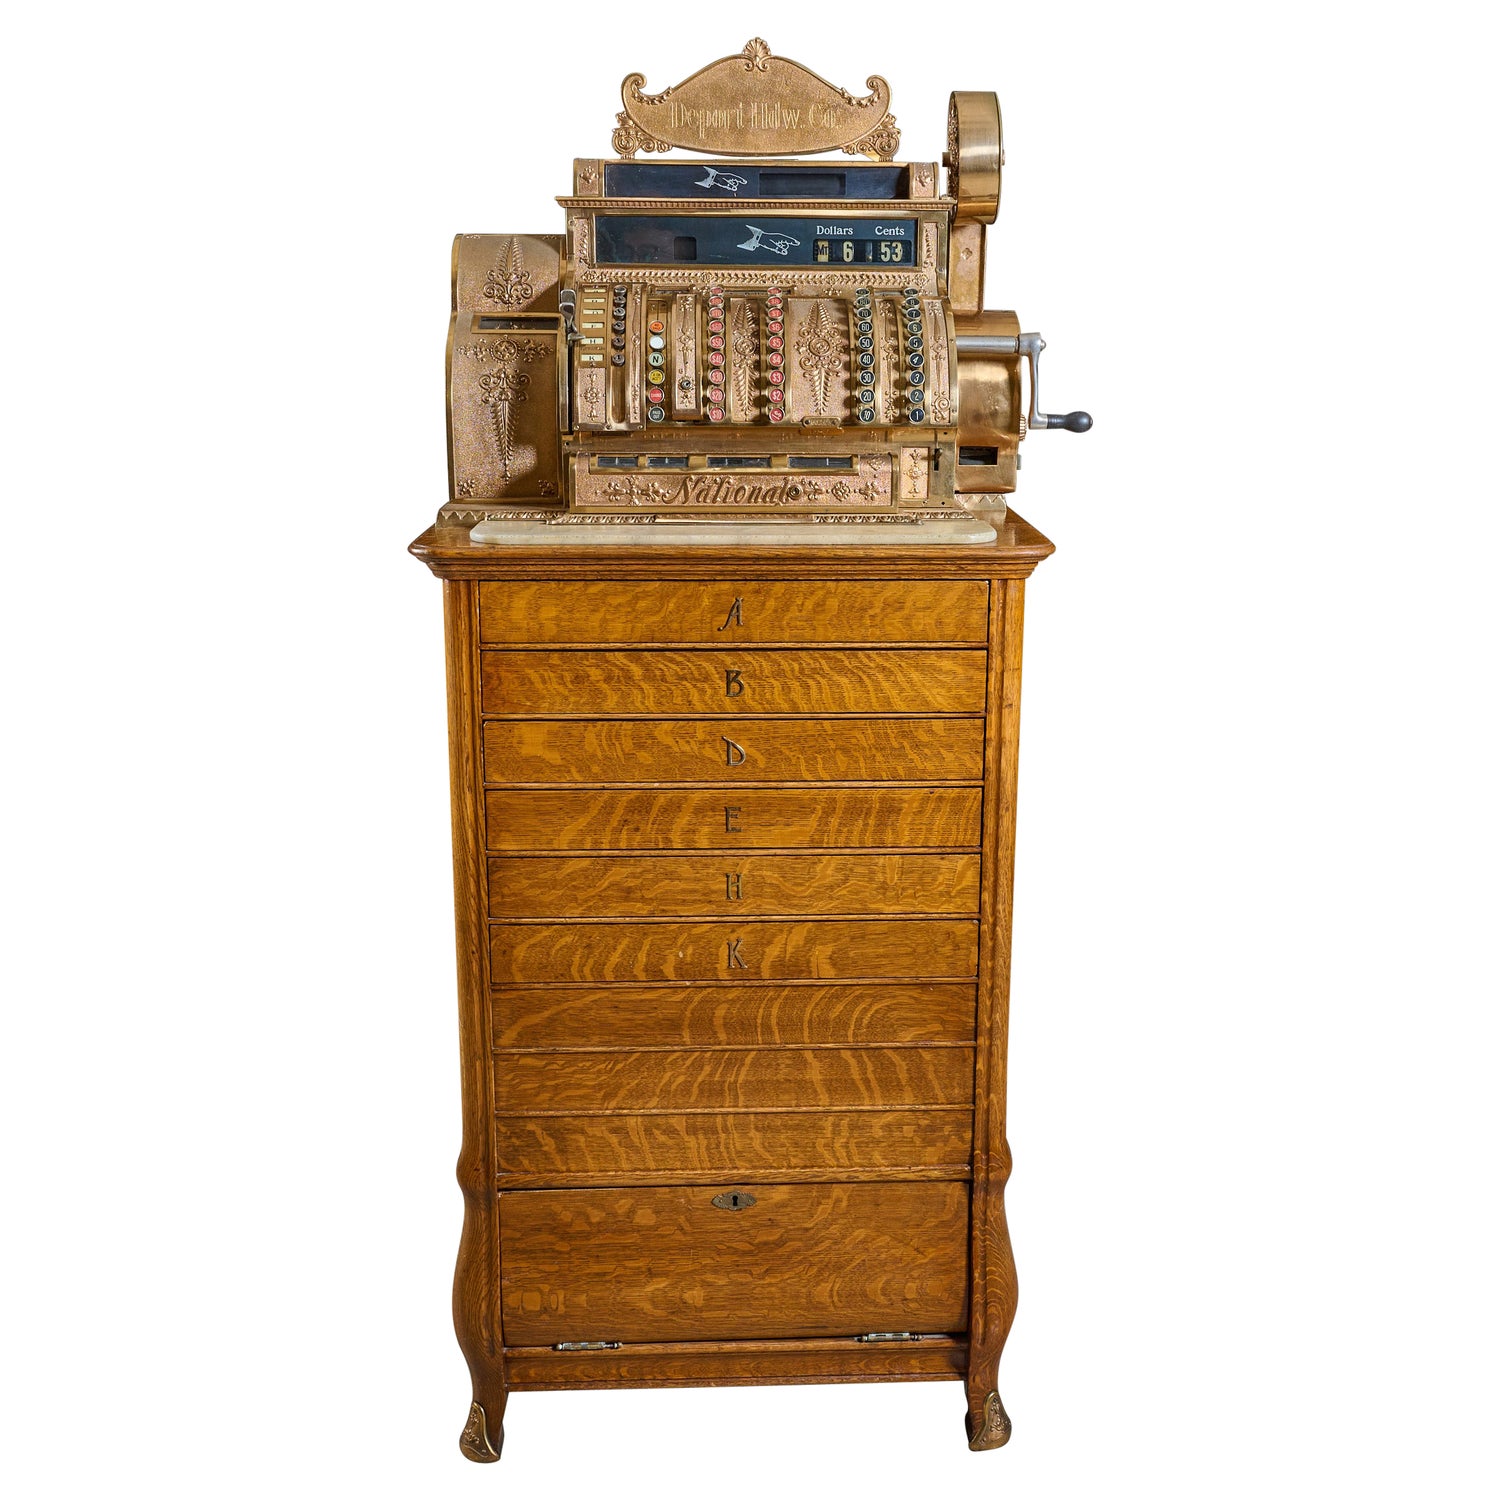 Antique Cash Register - 9 For Sale on 1stDibs | antique cash register for  sale, vintage cash register, old cash registers for sale